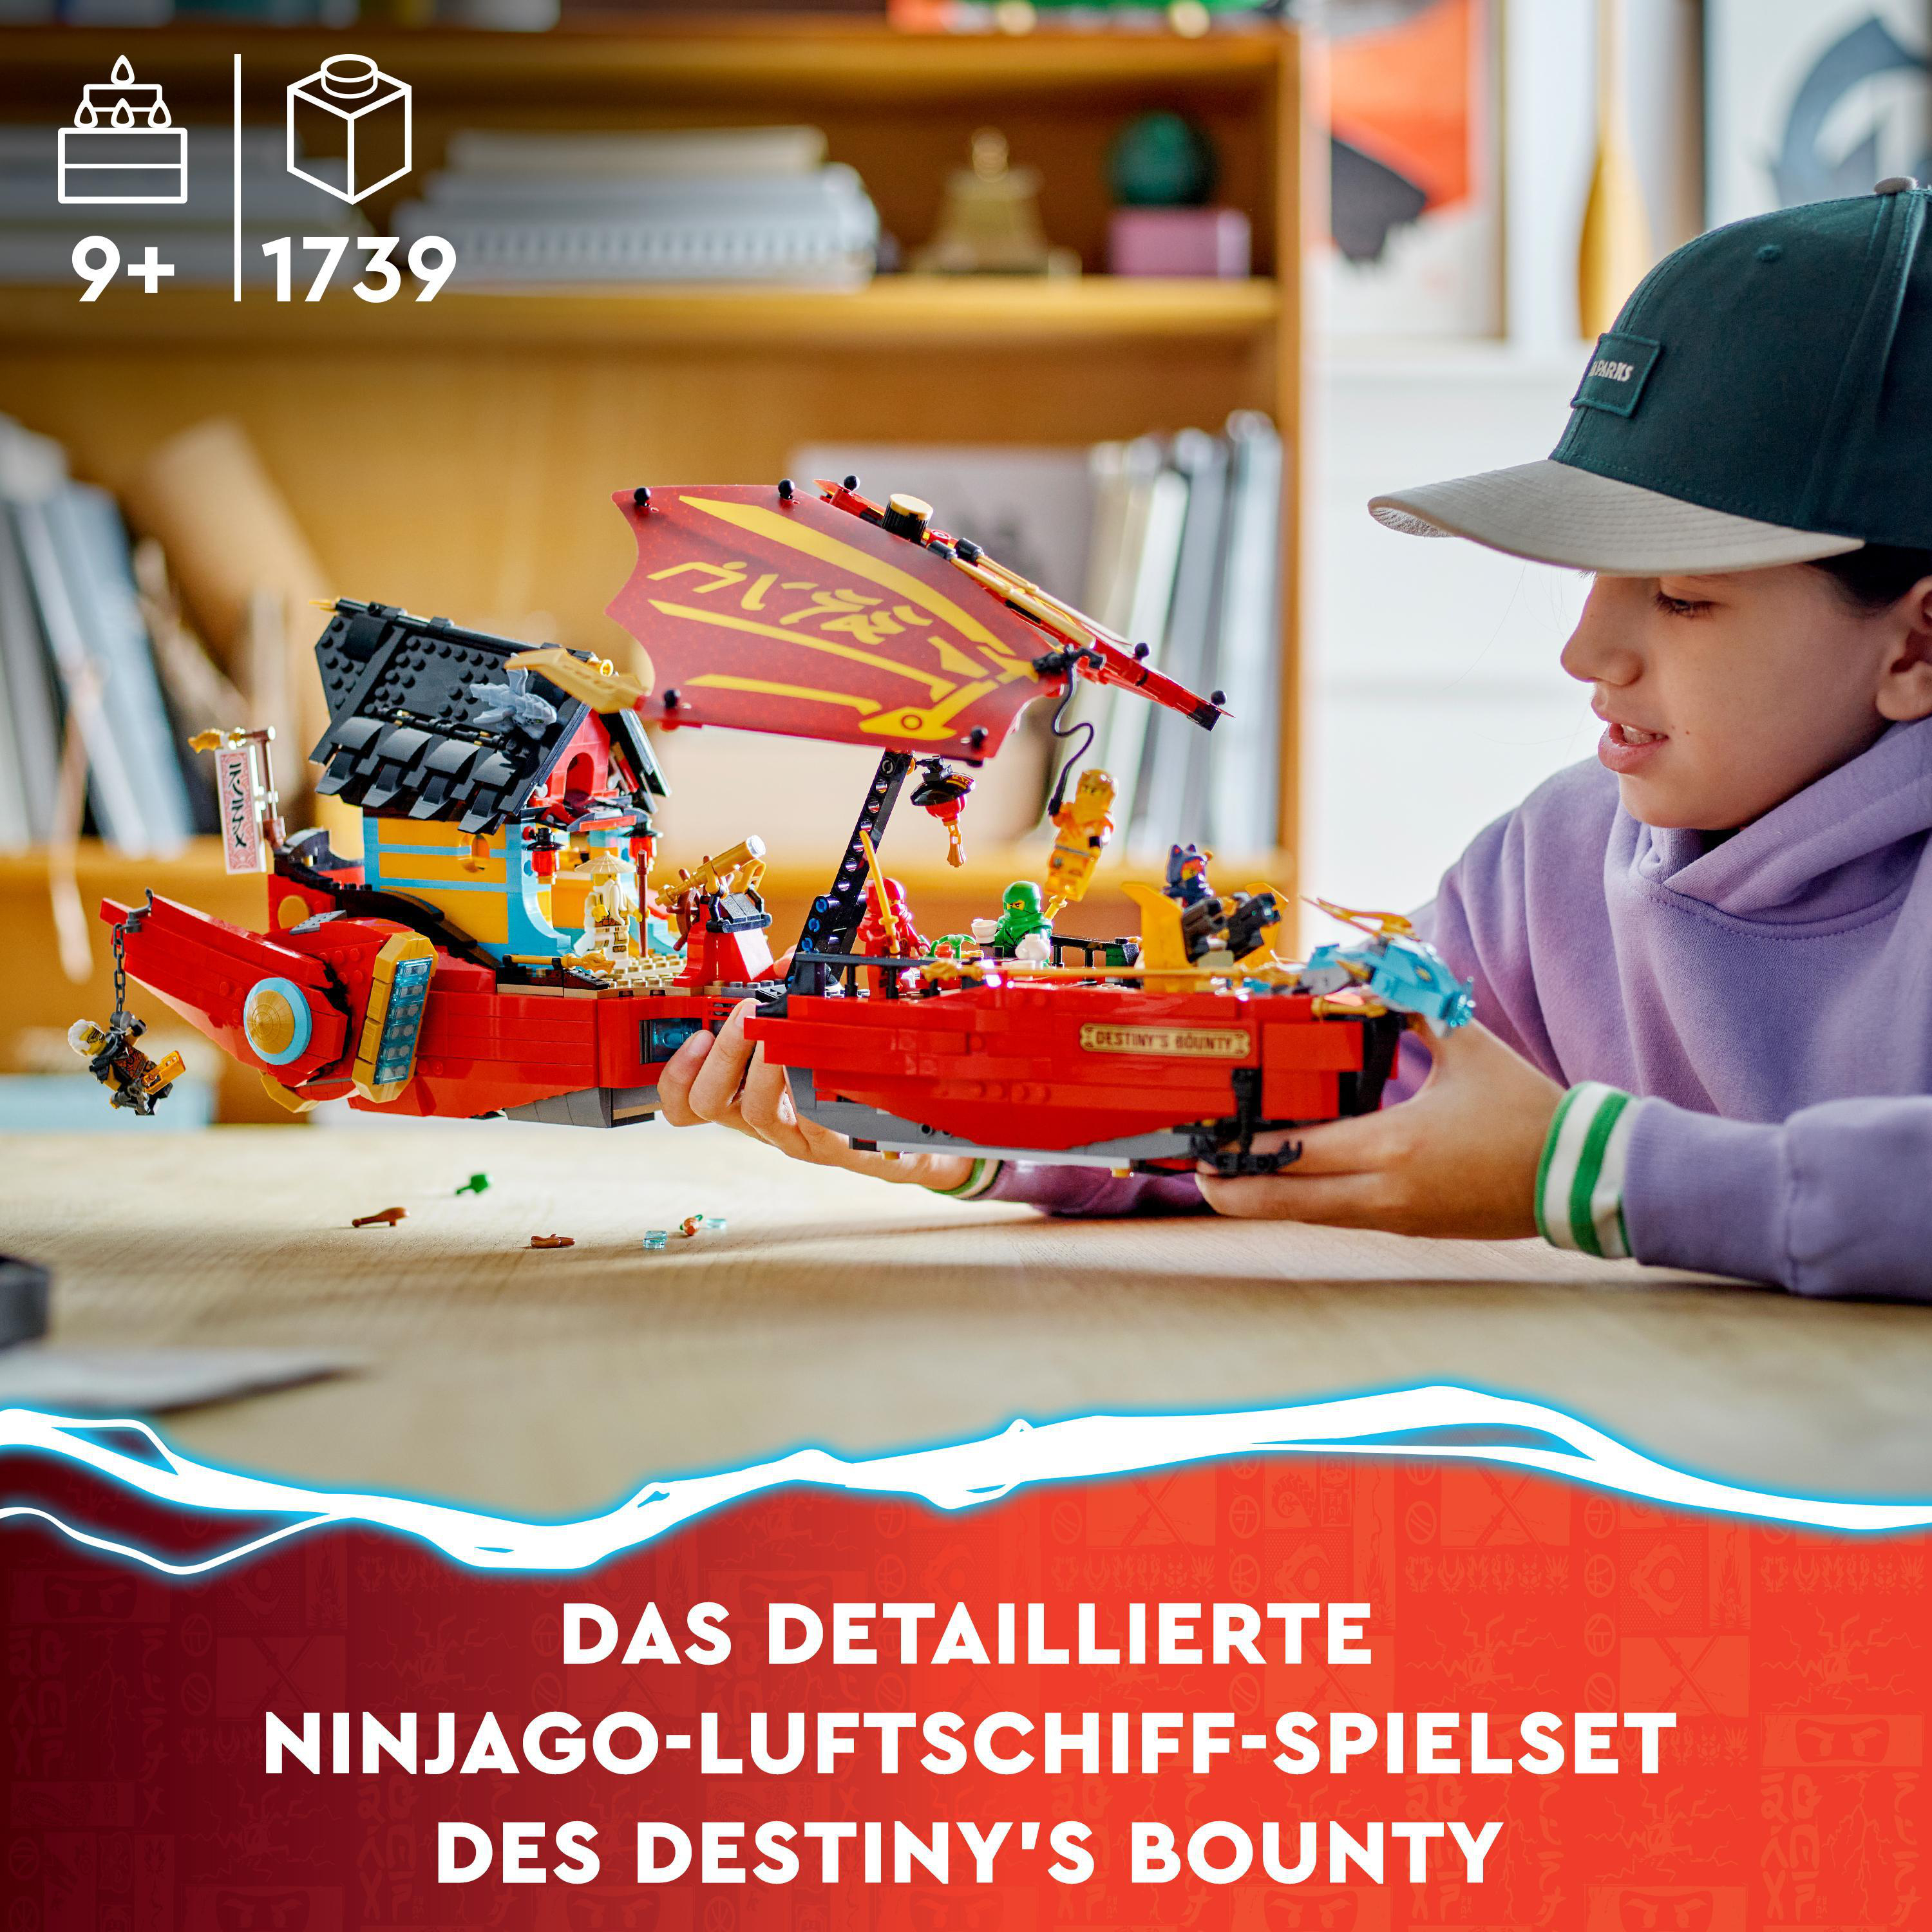 Bausatz, Mehrfarbig im 71797 Ninja-Flugsegler Wettlauf Zeit NINJAGO der mit LEGO